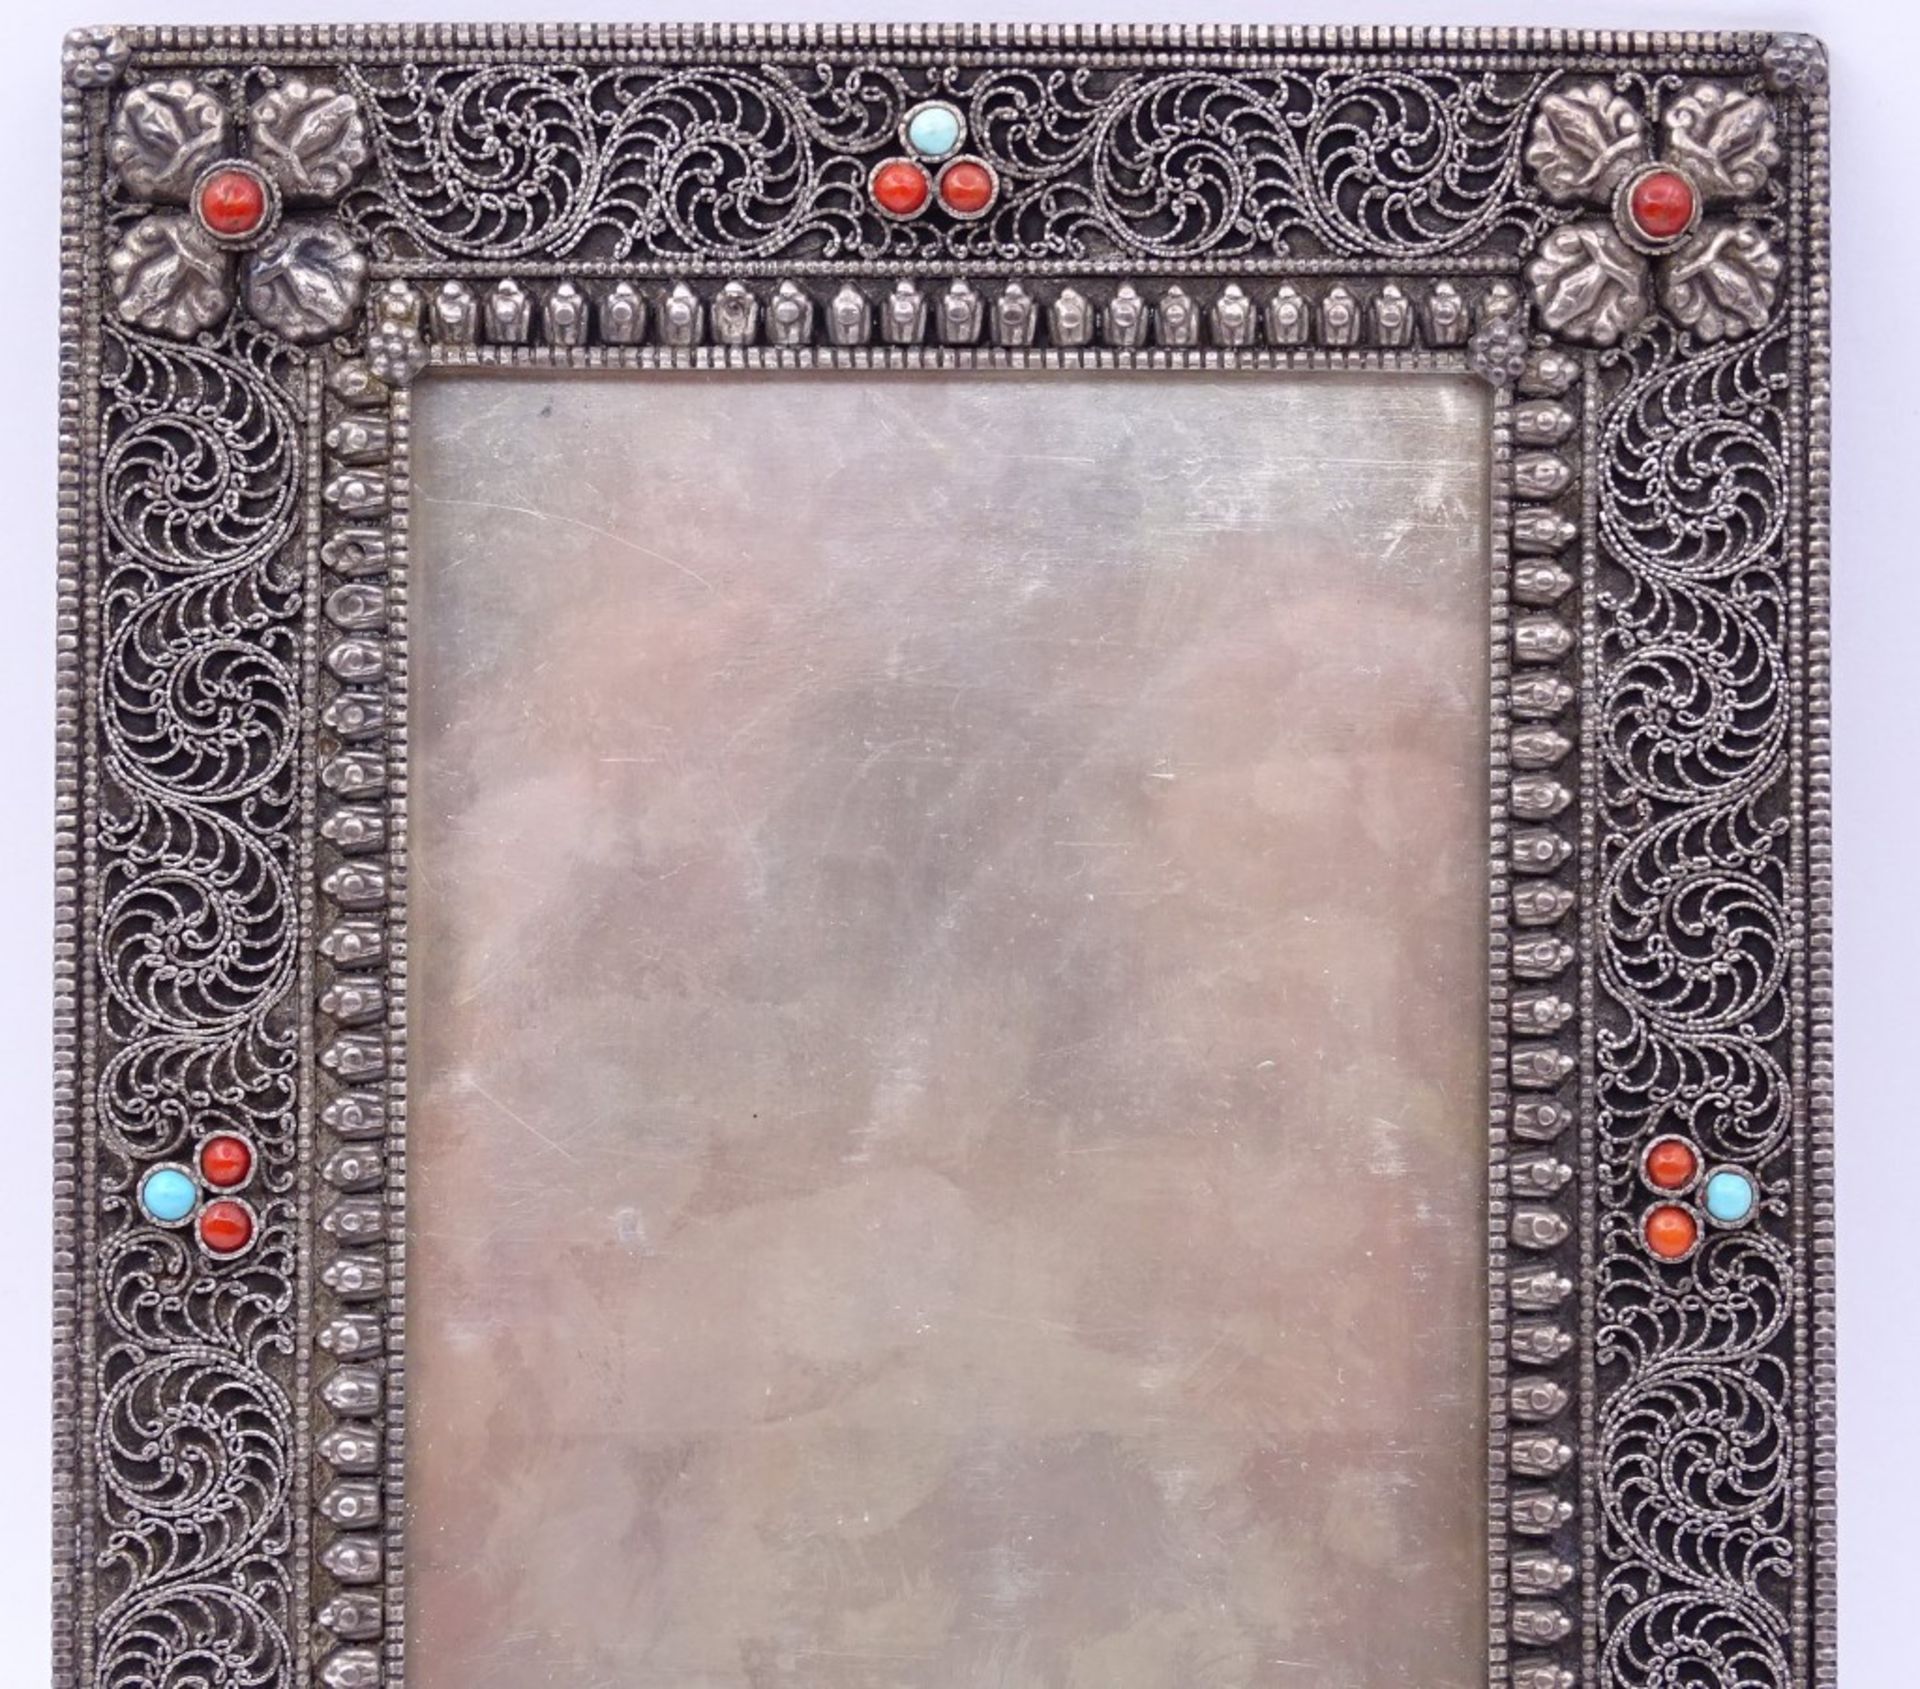 Tischfoto Rahmen in Sterling Silber mit Koralle und türkise,17,5x13,5cm,mit Glaseinsatz,Gew. - Bild 2 aus 5